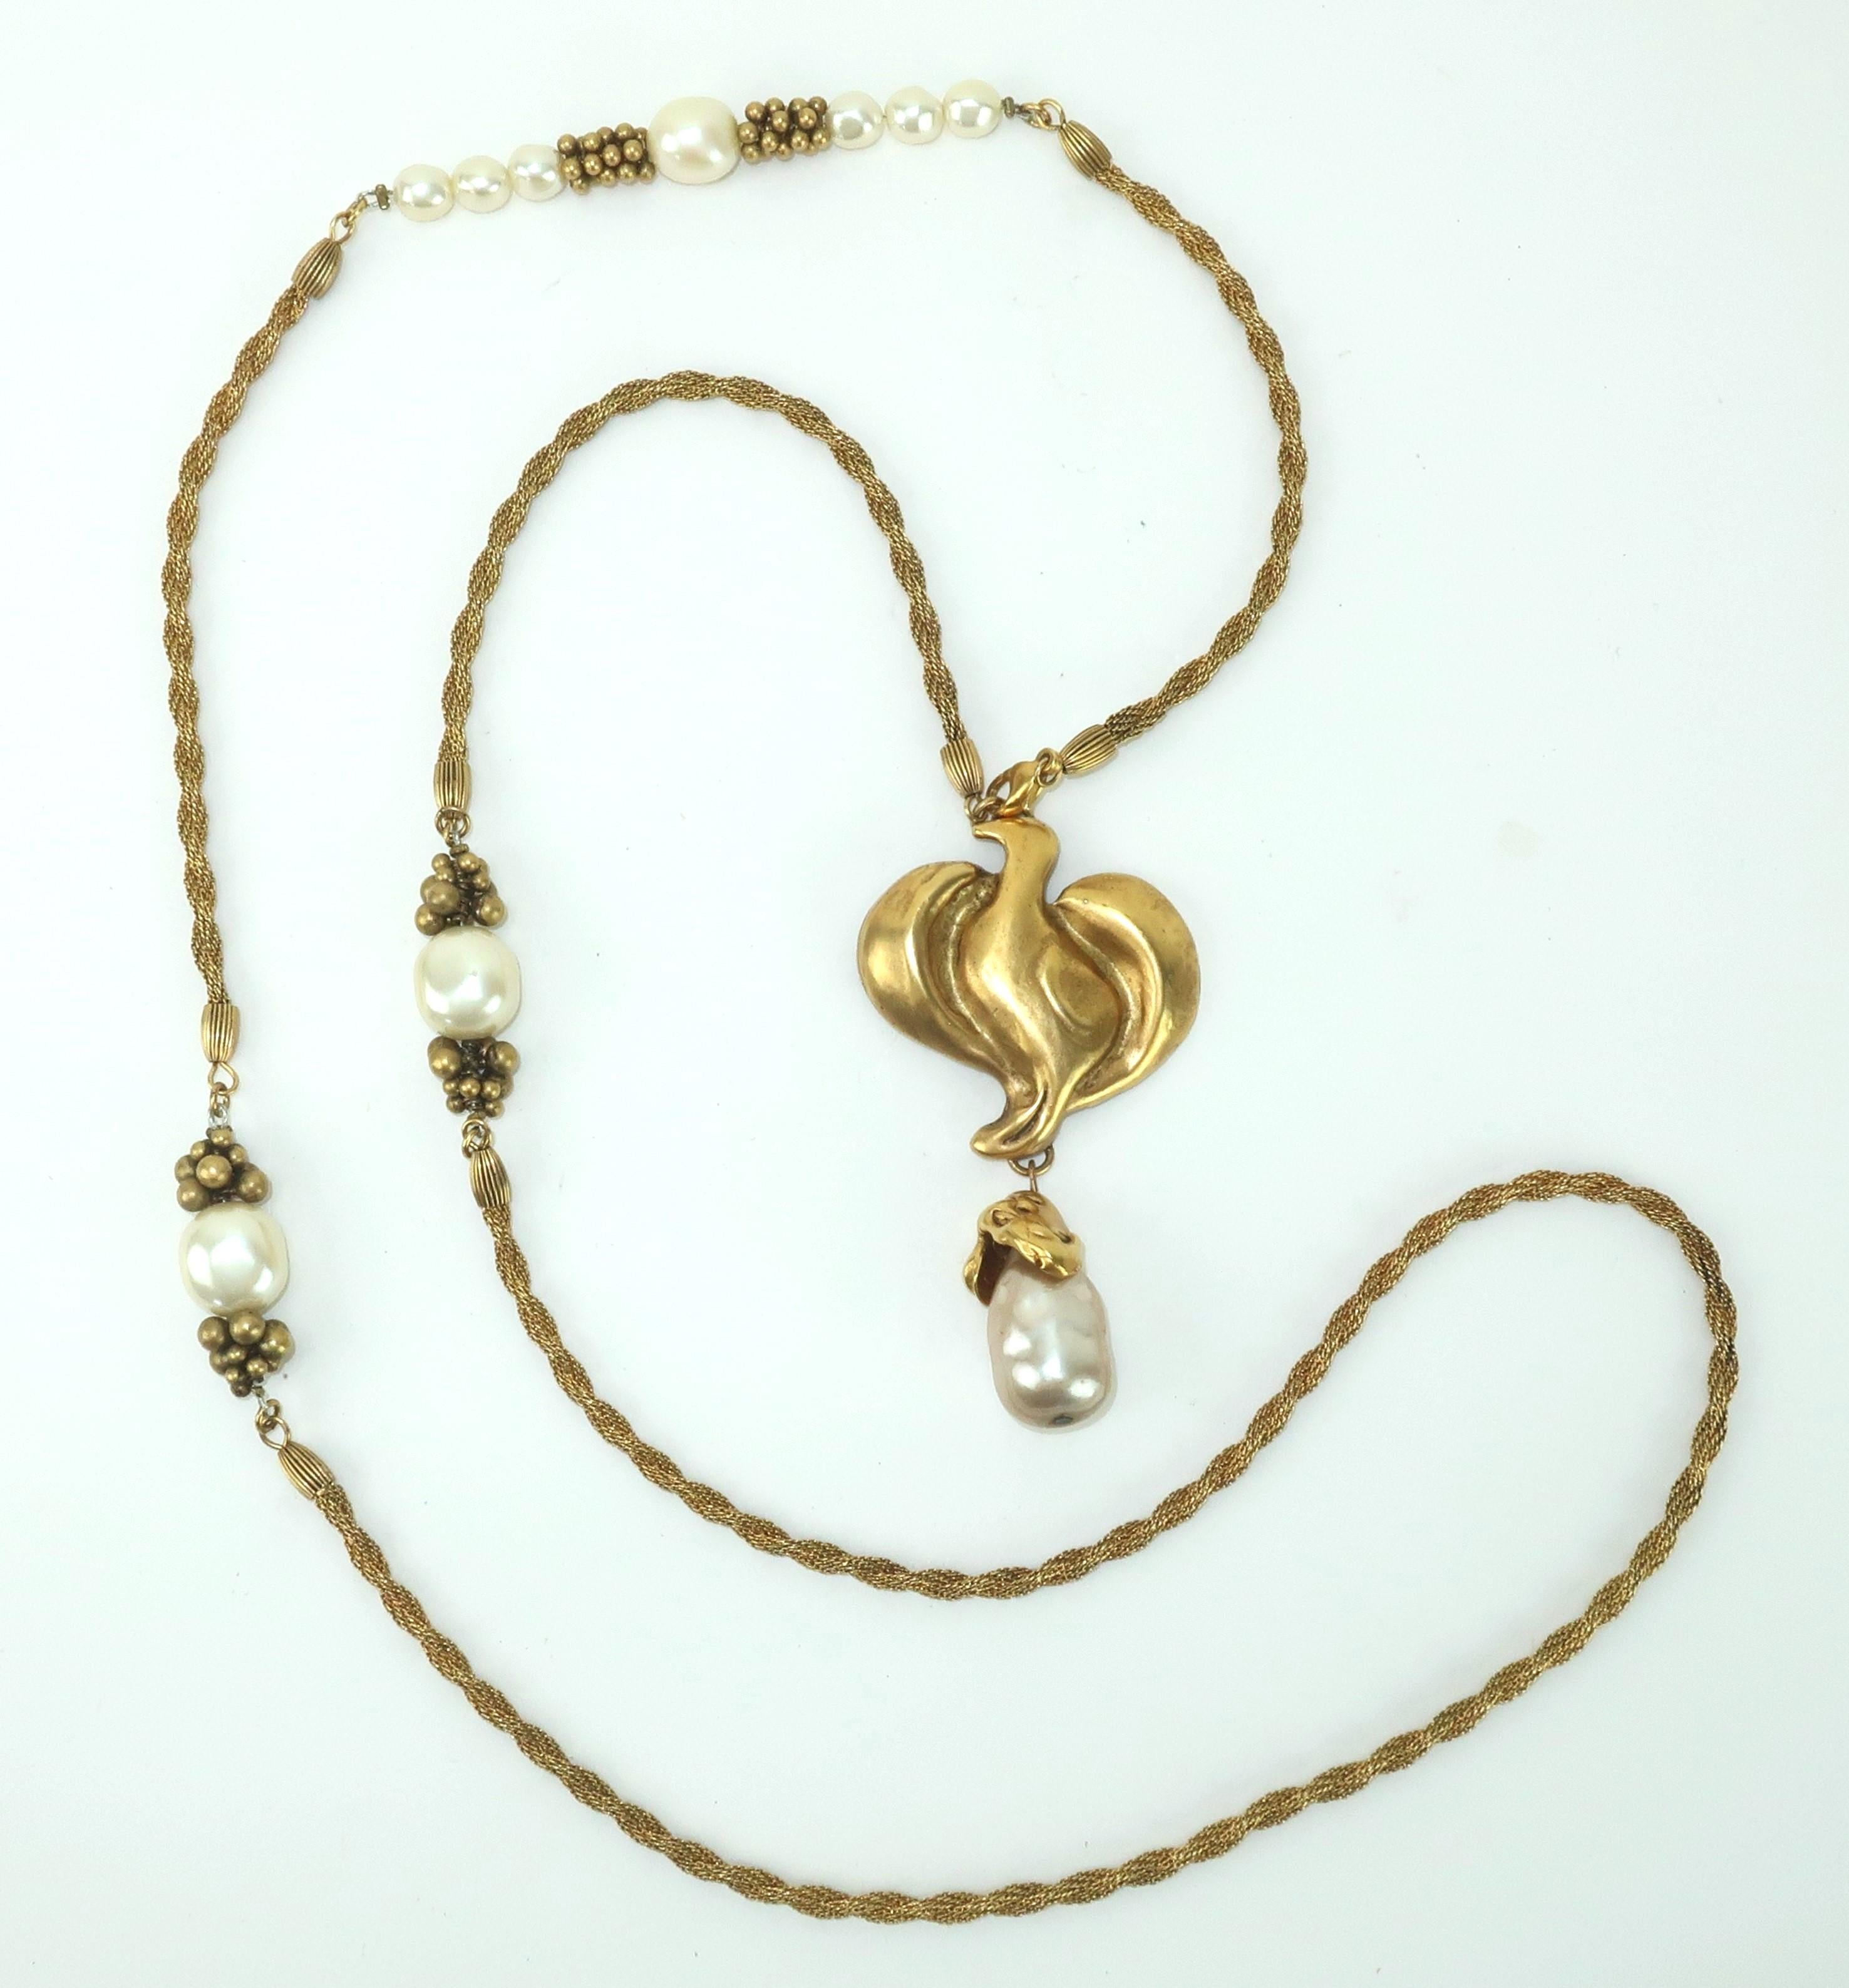 Fin du 20ème siècle, collier de corde en ton or avec un pendentif en forme d'oiseau abstrait et des accents de fausses perles baroques.  Le collier est magnifiquement réalisé avec des détails de qualité, notamment le perlage en grappes autour des